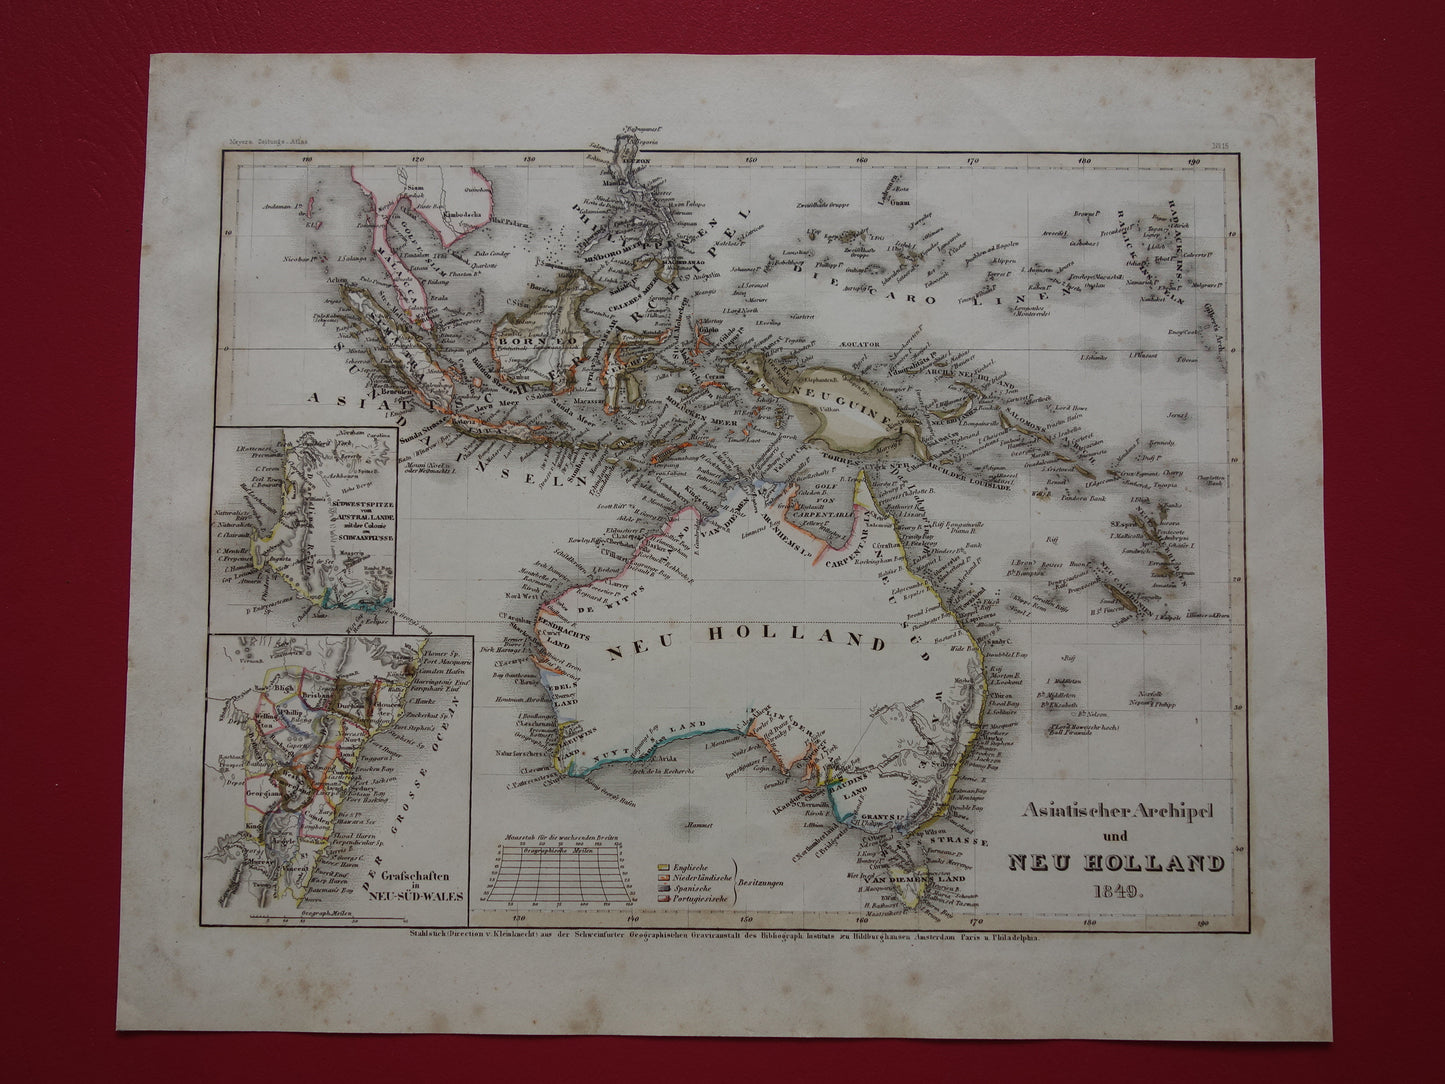 Oude kaart van Australië en Indonesië uit 1849 originele antieke landkaart - vintage kaarten